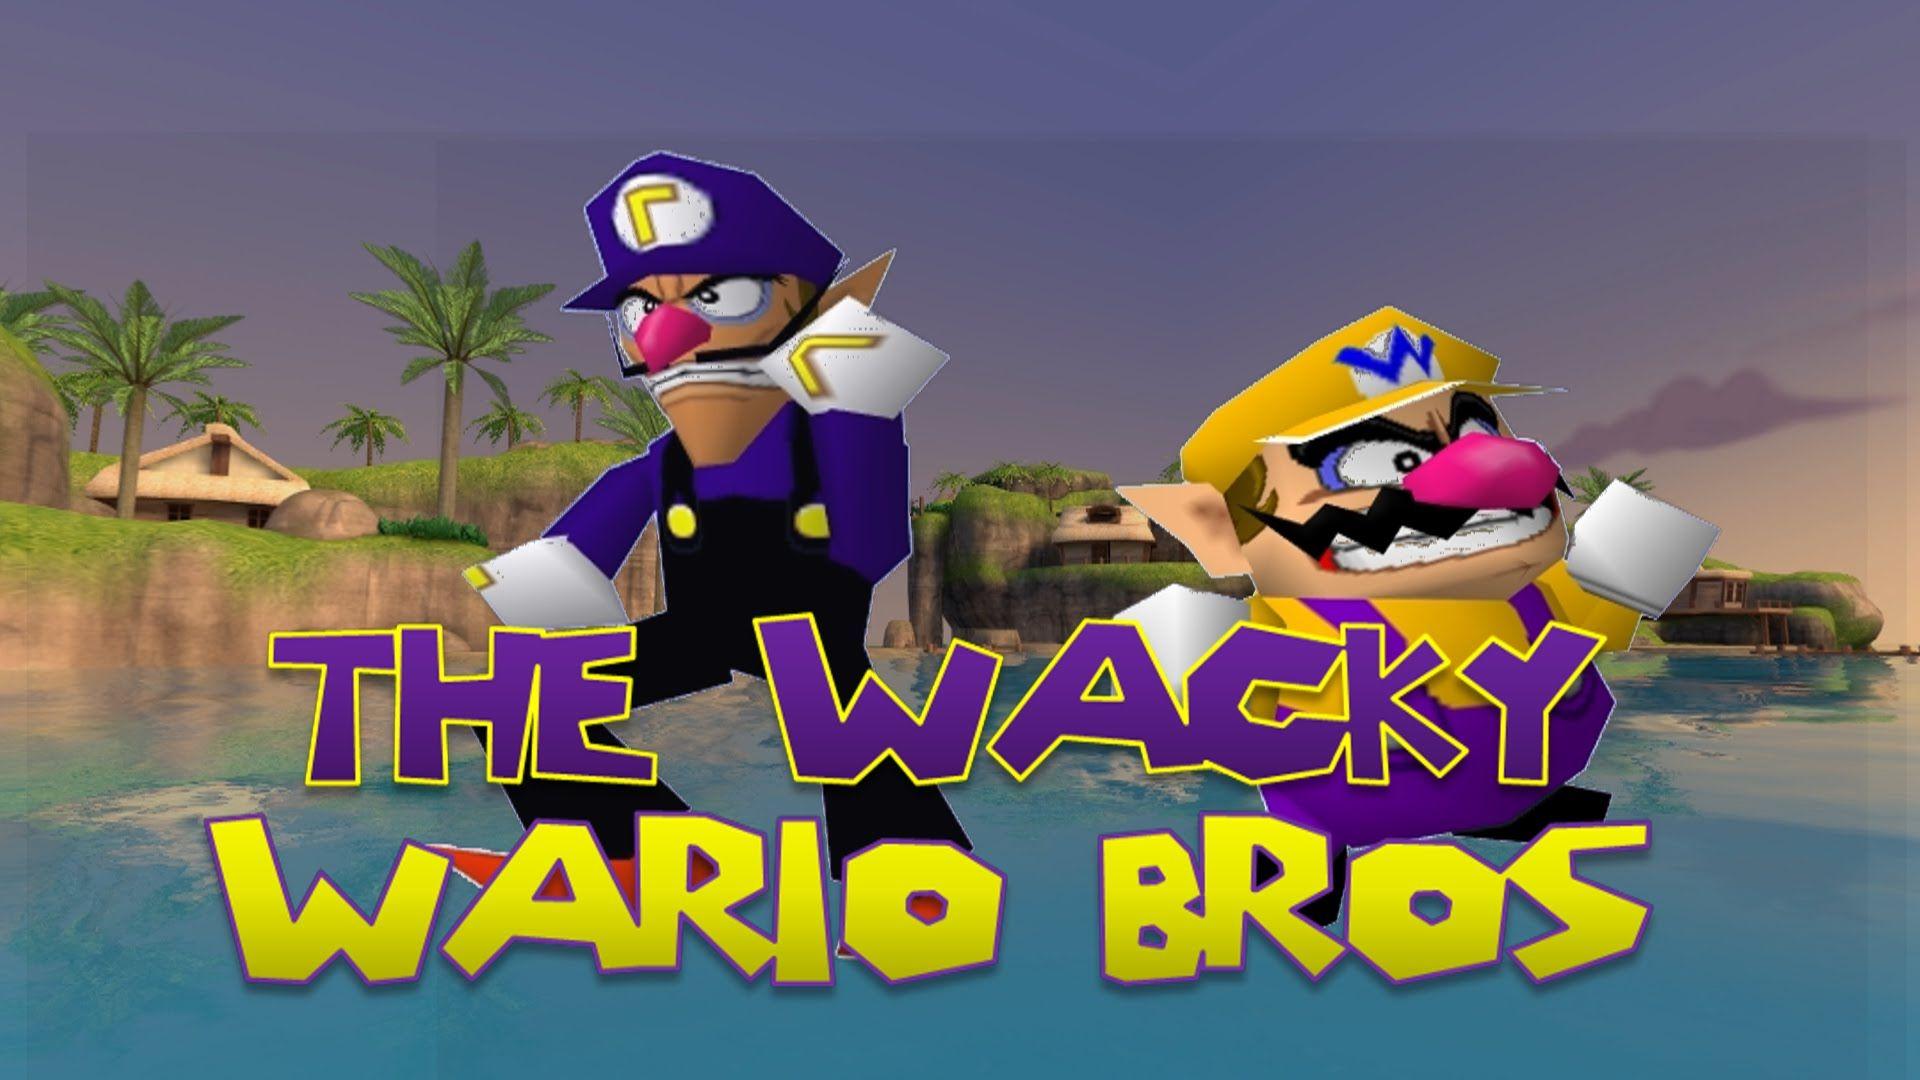 The Wacky Wario bros: Waluigi Origins